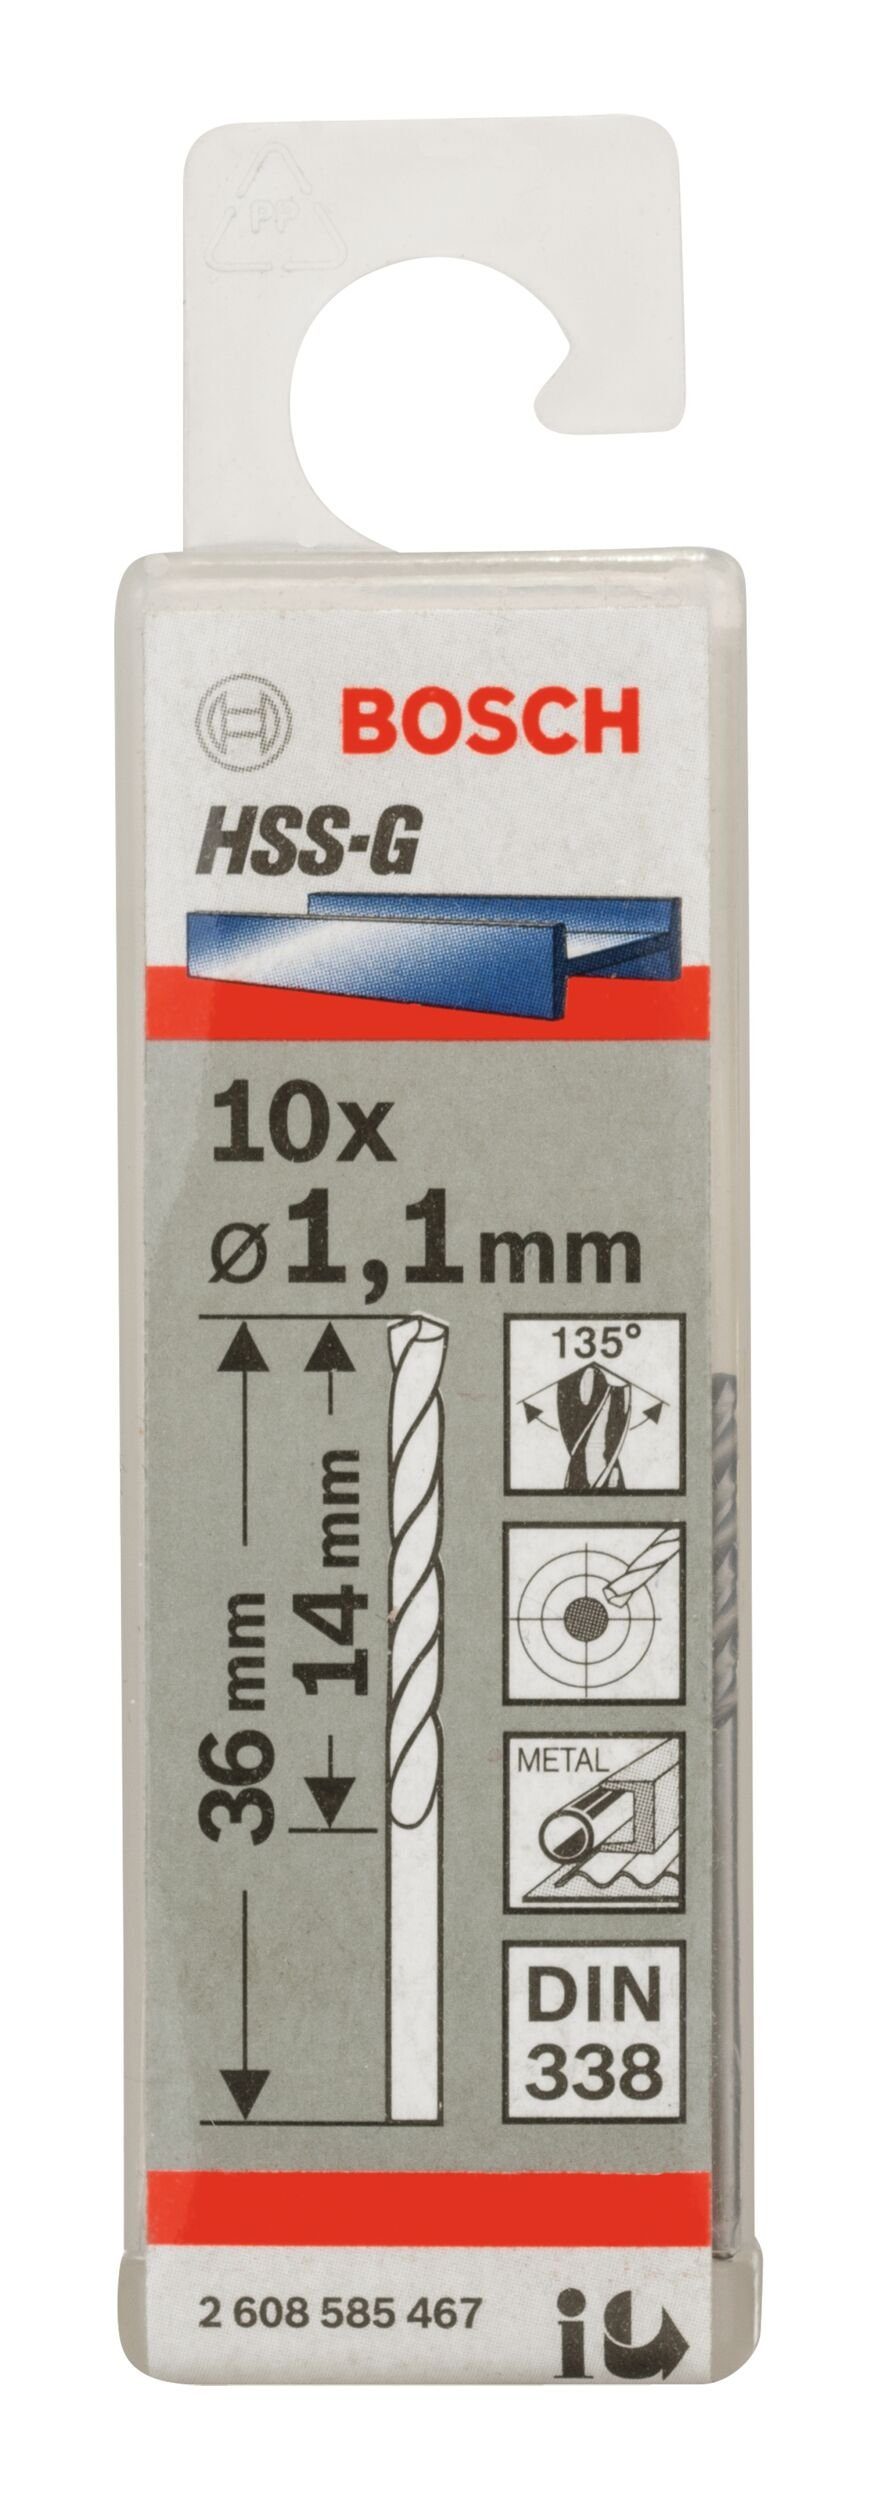 BOSCH - (10 x Metallbohrer, mm HSS-G 10er-Pack x 1,1 36 - (DIN 14 Stück), 338)